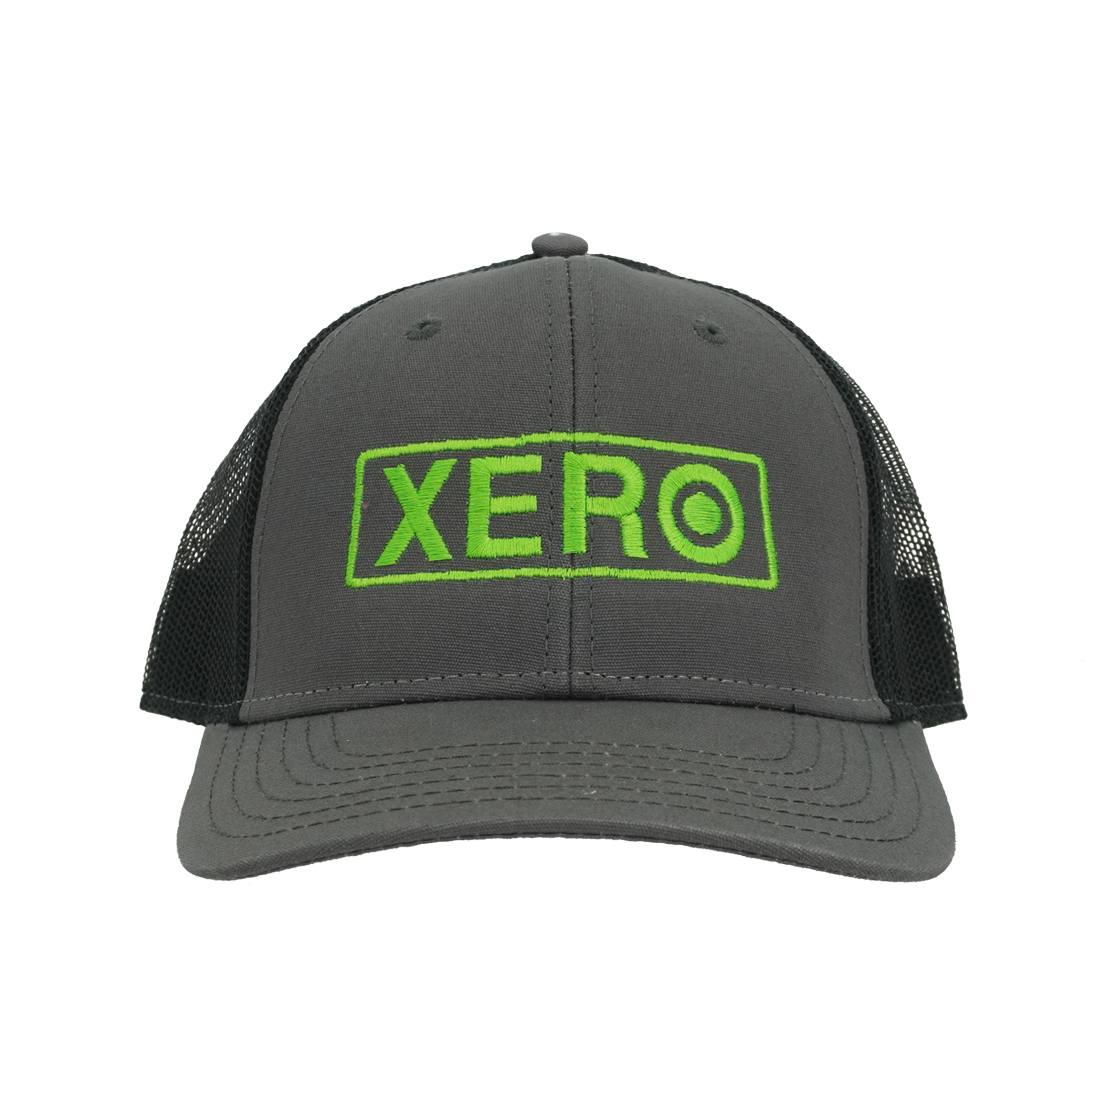 XERO Onyx Cap Full View